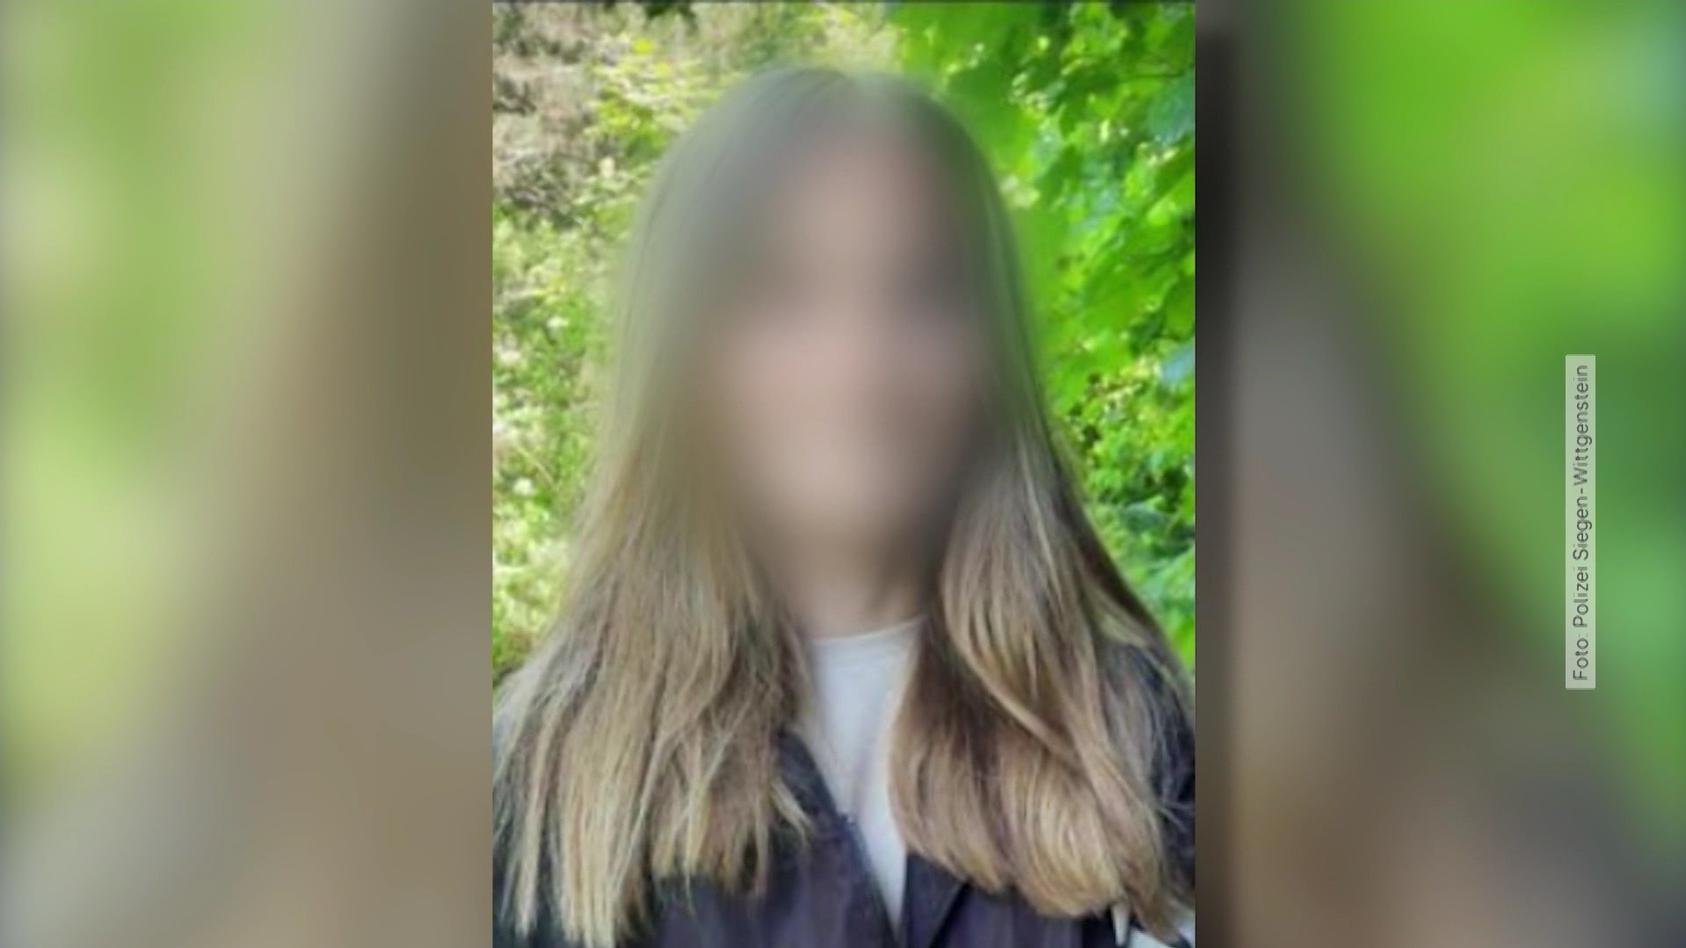 Blut-Tat in Freudenberg - Polizei findet schockierenden Hinweis bei Luises Mörderin